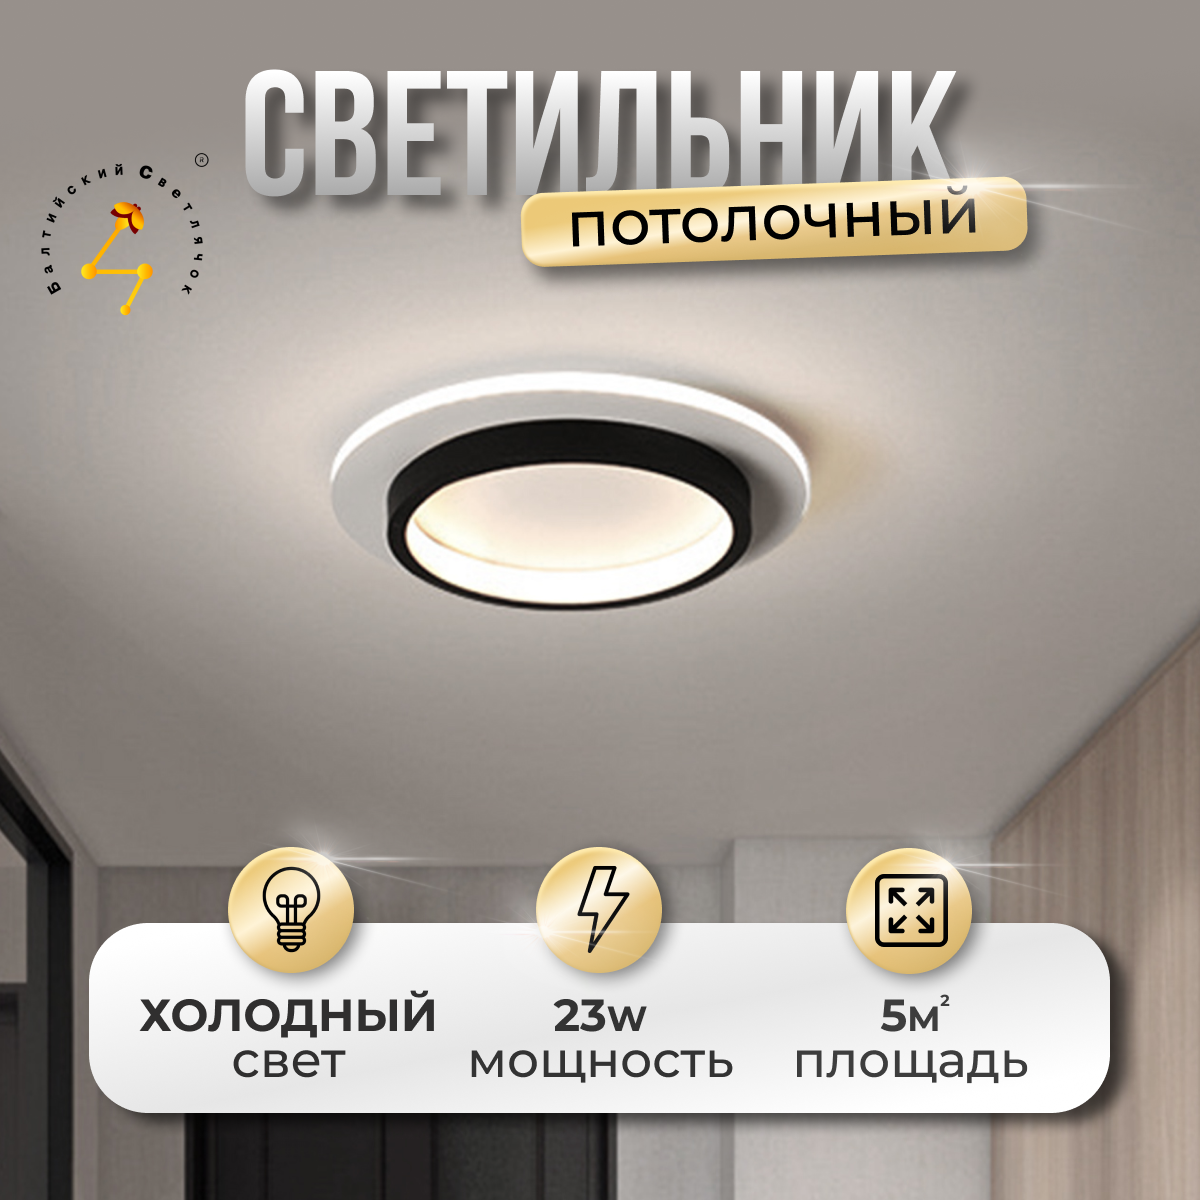 Светильник потолочный Балтийский Светлячок MC-1006X LED 23 Вт холодный свет